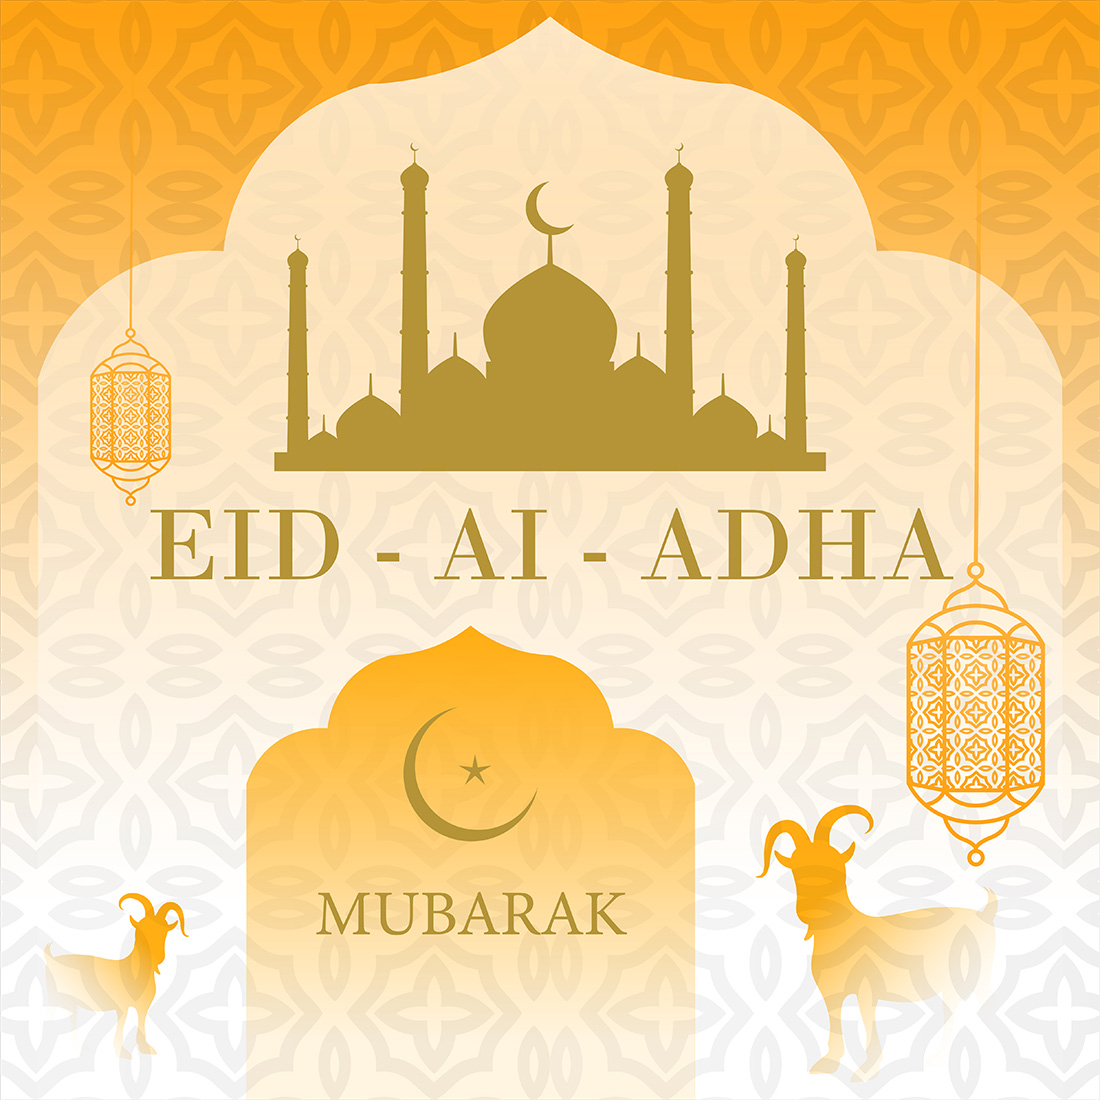 Eid al adha mubarak preview image.